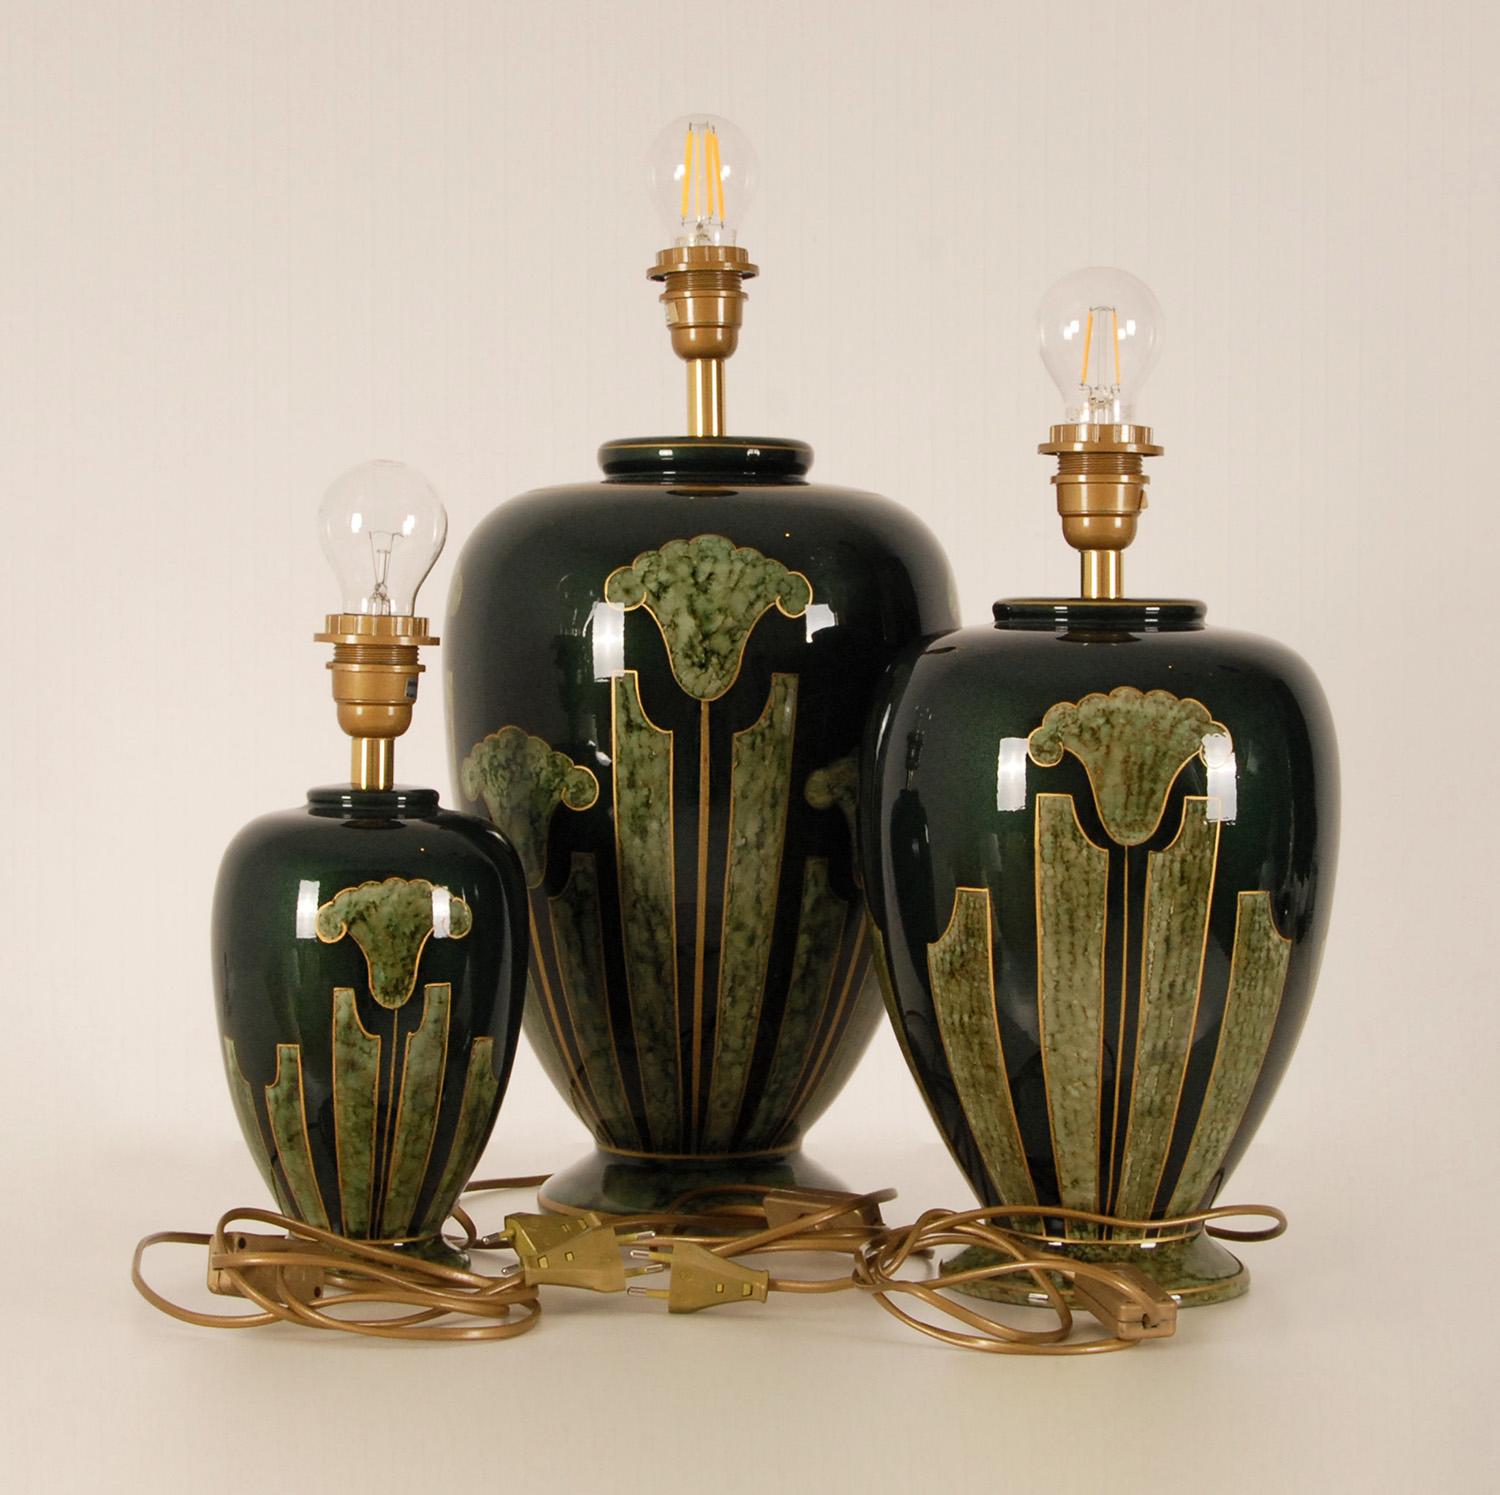 Lampes de table vintage en céramique française - lampes vases classiques avec faux marbre
Set de 3 lampes de table
Matériau : Porcelaine - Céramique
Design : Français Louis Drimmer (signé)
Producteur : Louis Drimmer, dans le style de Longwy
Style :